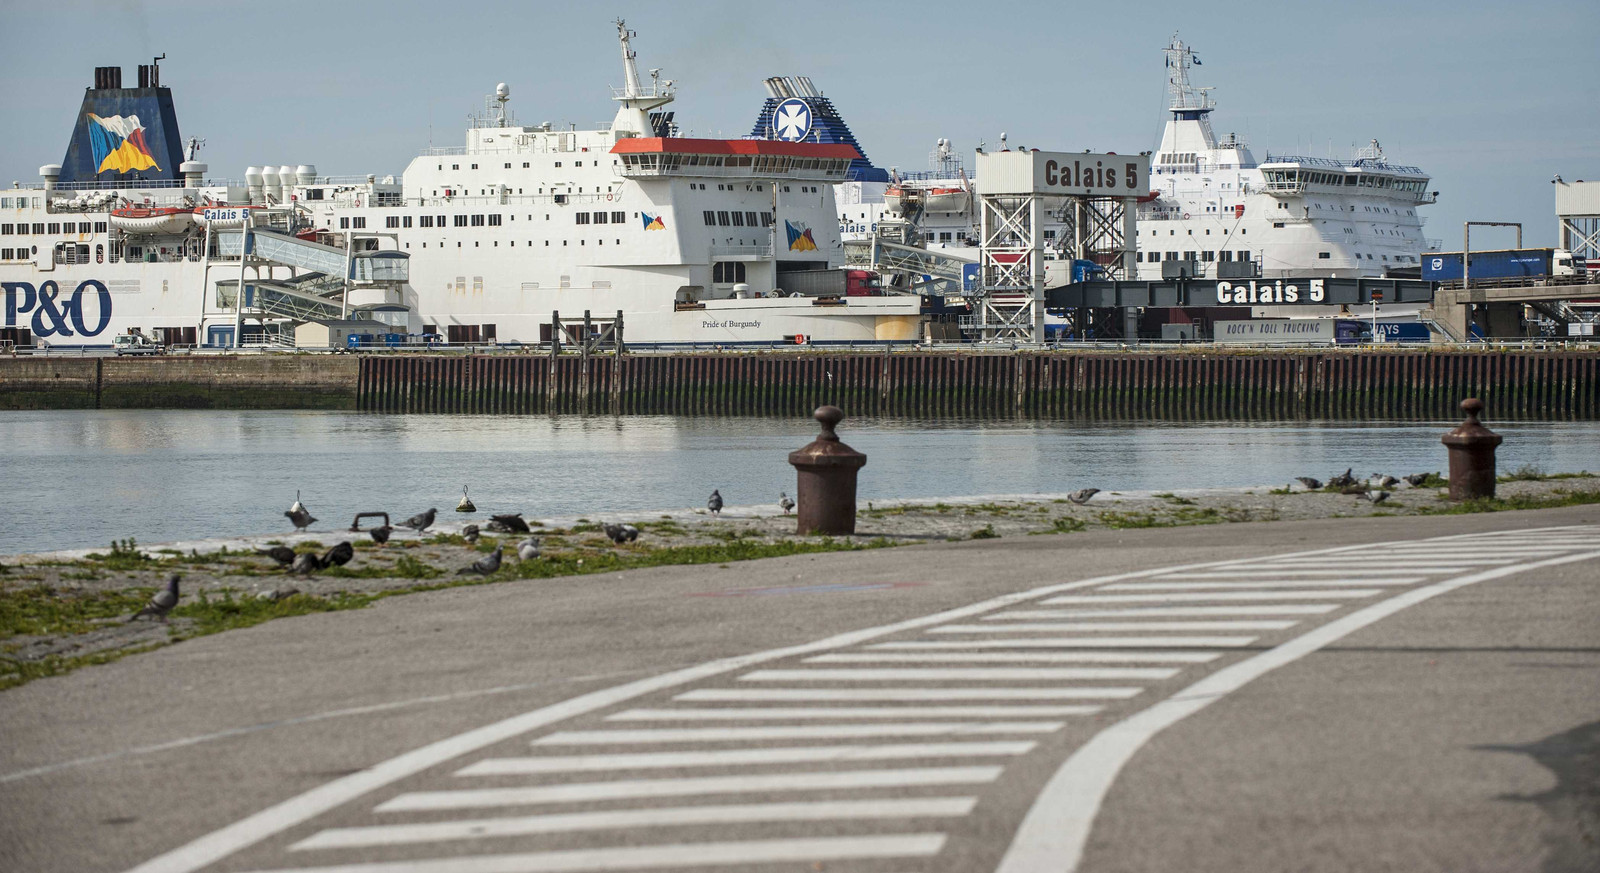 De haven van Calais, waar vorige week een 32-jarige vrachtwagenchauffeur uit Urk is aangehouden.